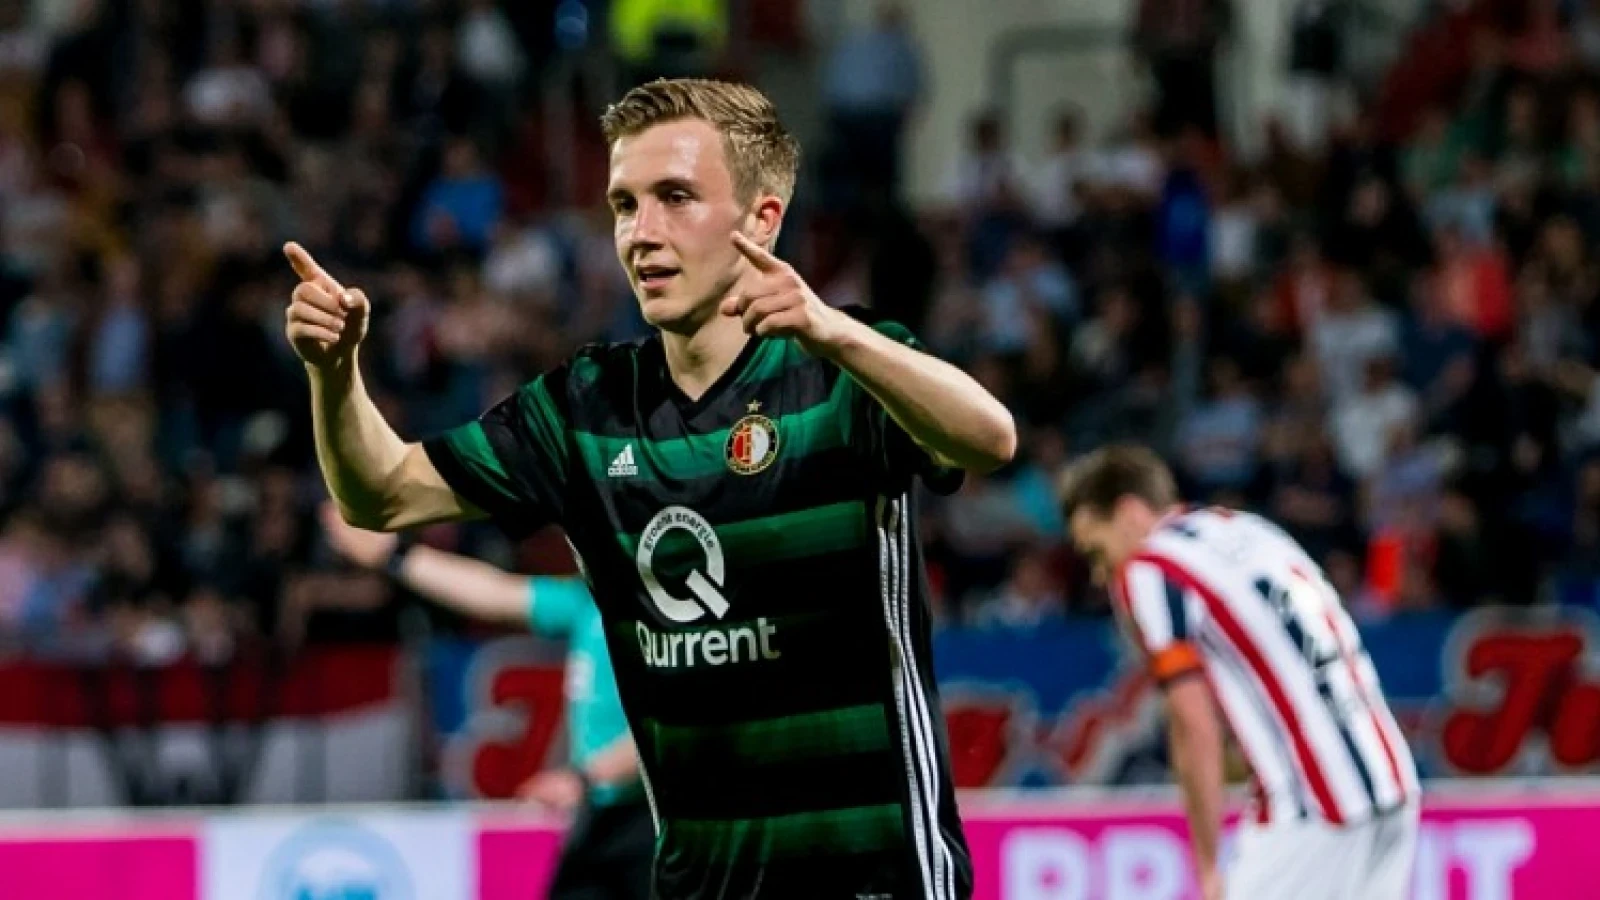 Lovende kritiek voor Vente: 'Wat mooi aan hem is, is dat hij 100% Feyenoord is'